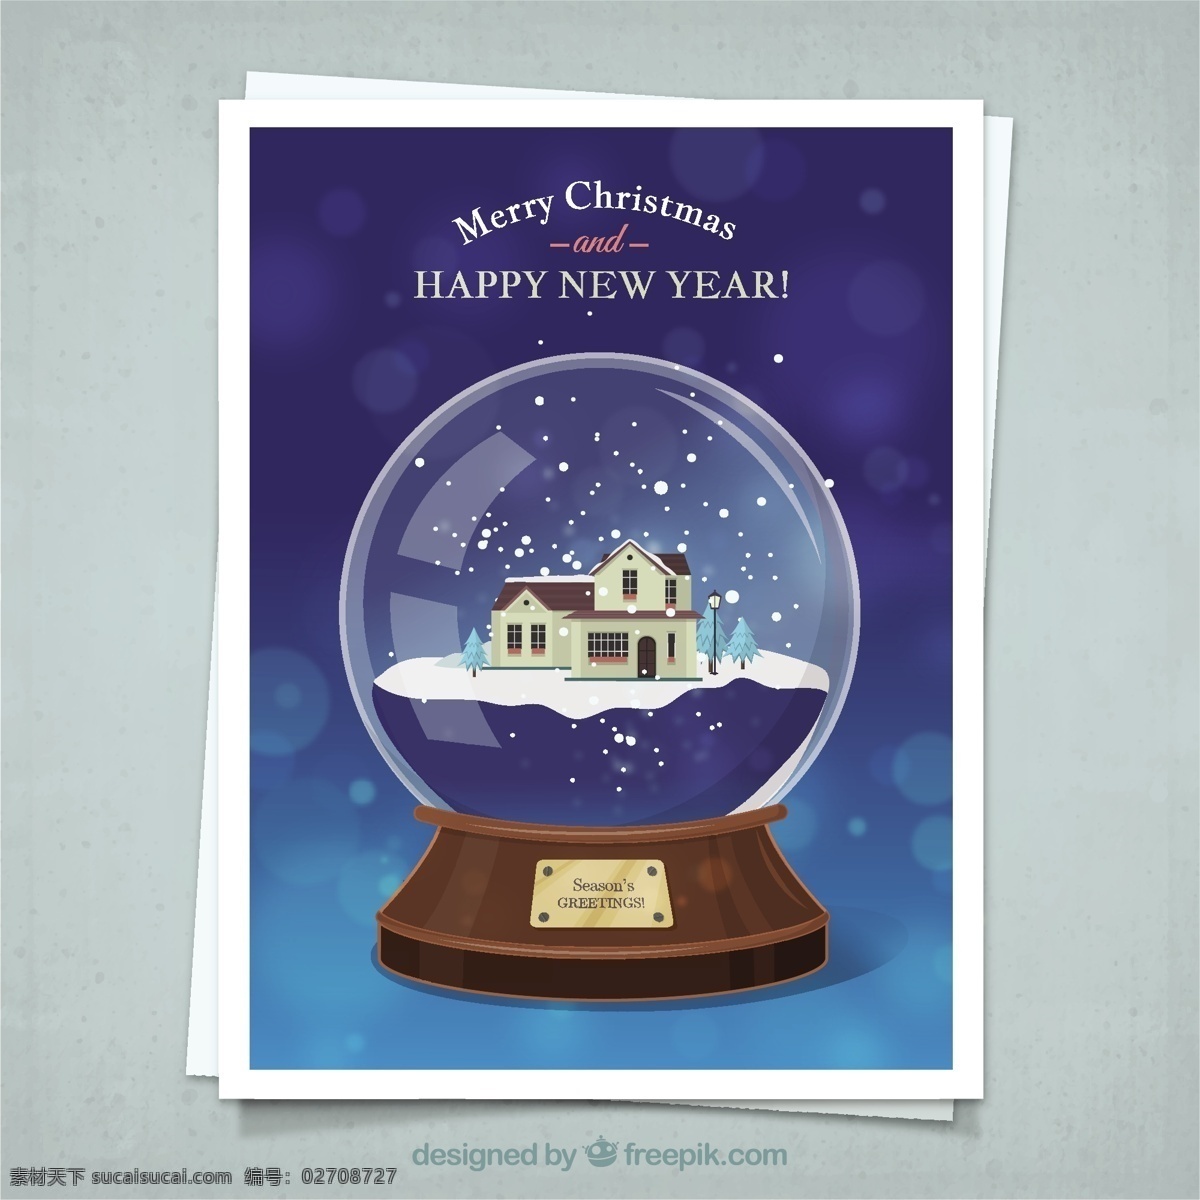 圣诞卡 雪球 漂亮 房子 圣诞卡雪球 漂亮房子 圣诞 水晶球